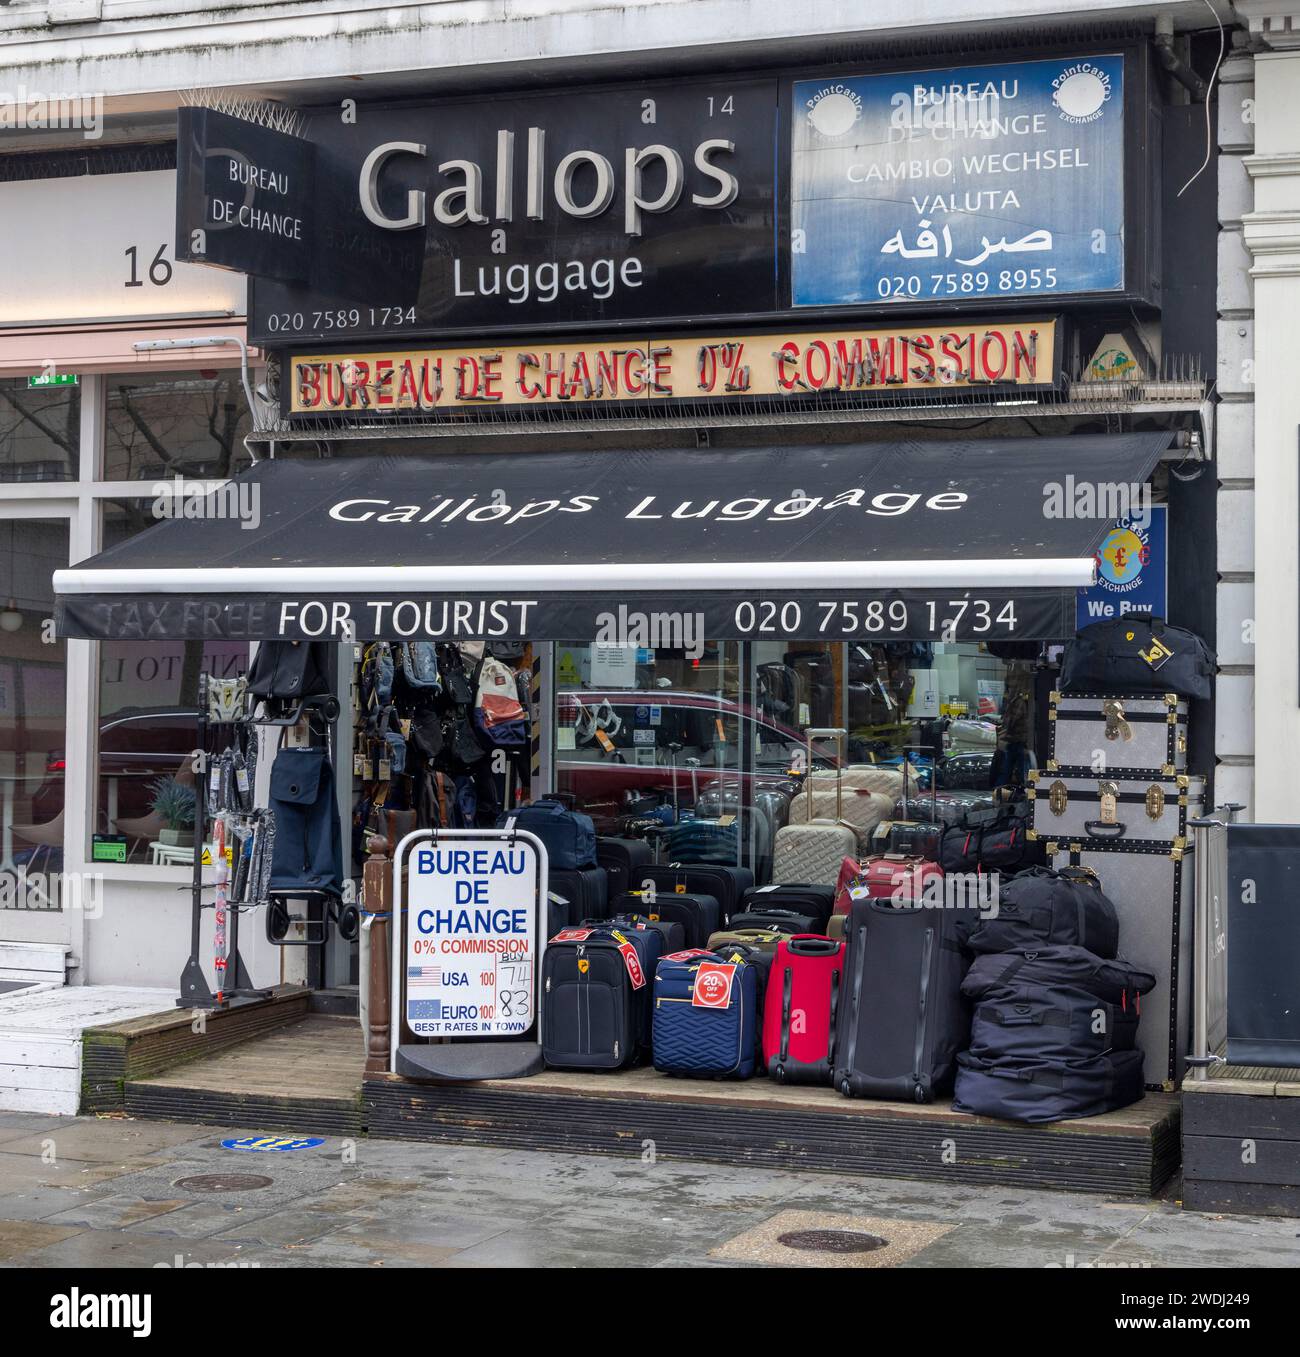 Gallops, ufficio di cambio valuta e deposito bagagli, South Kensington, Londra Regno Unito Foto Stock